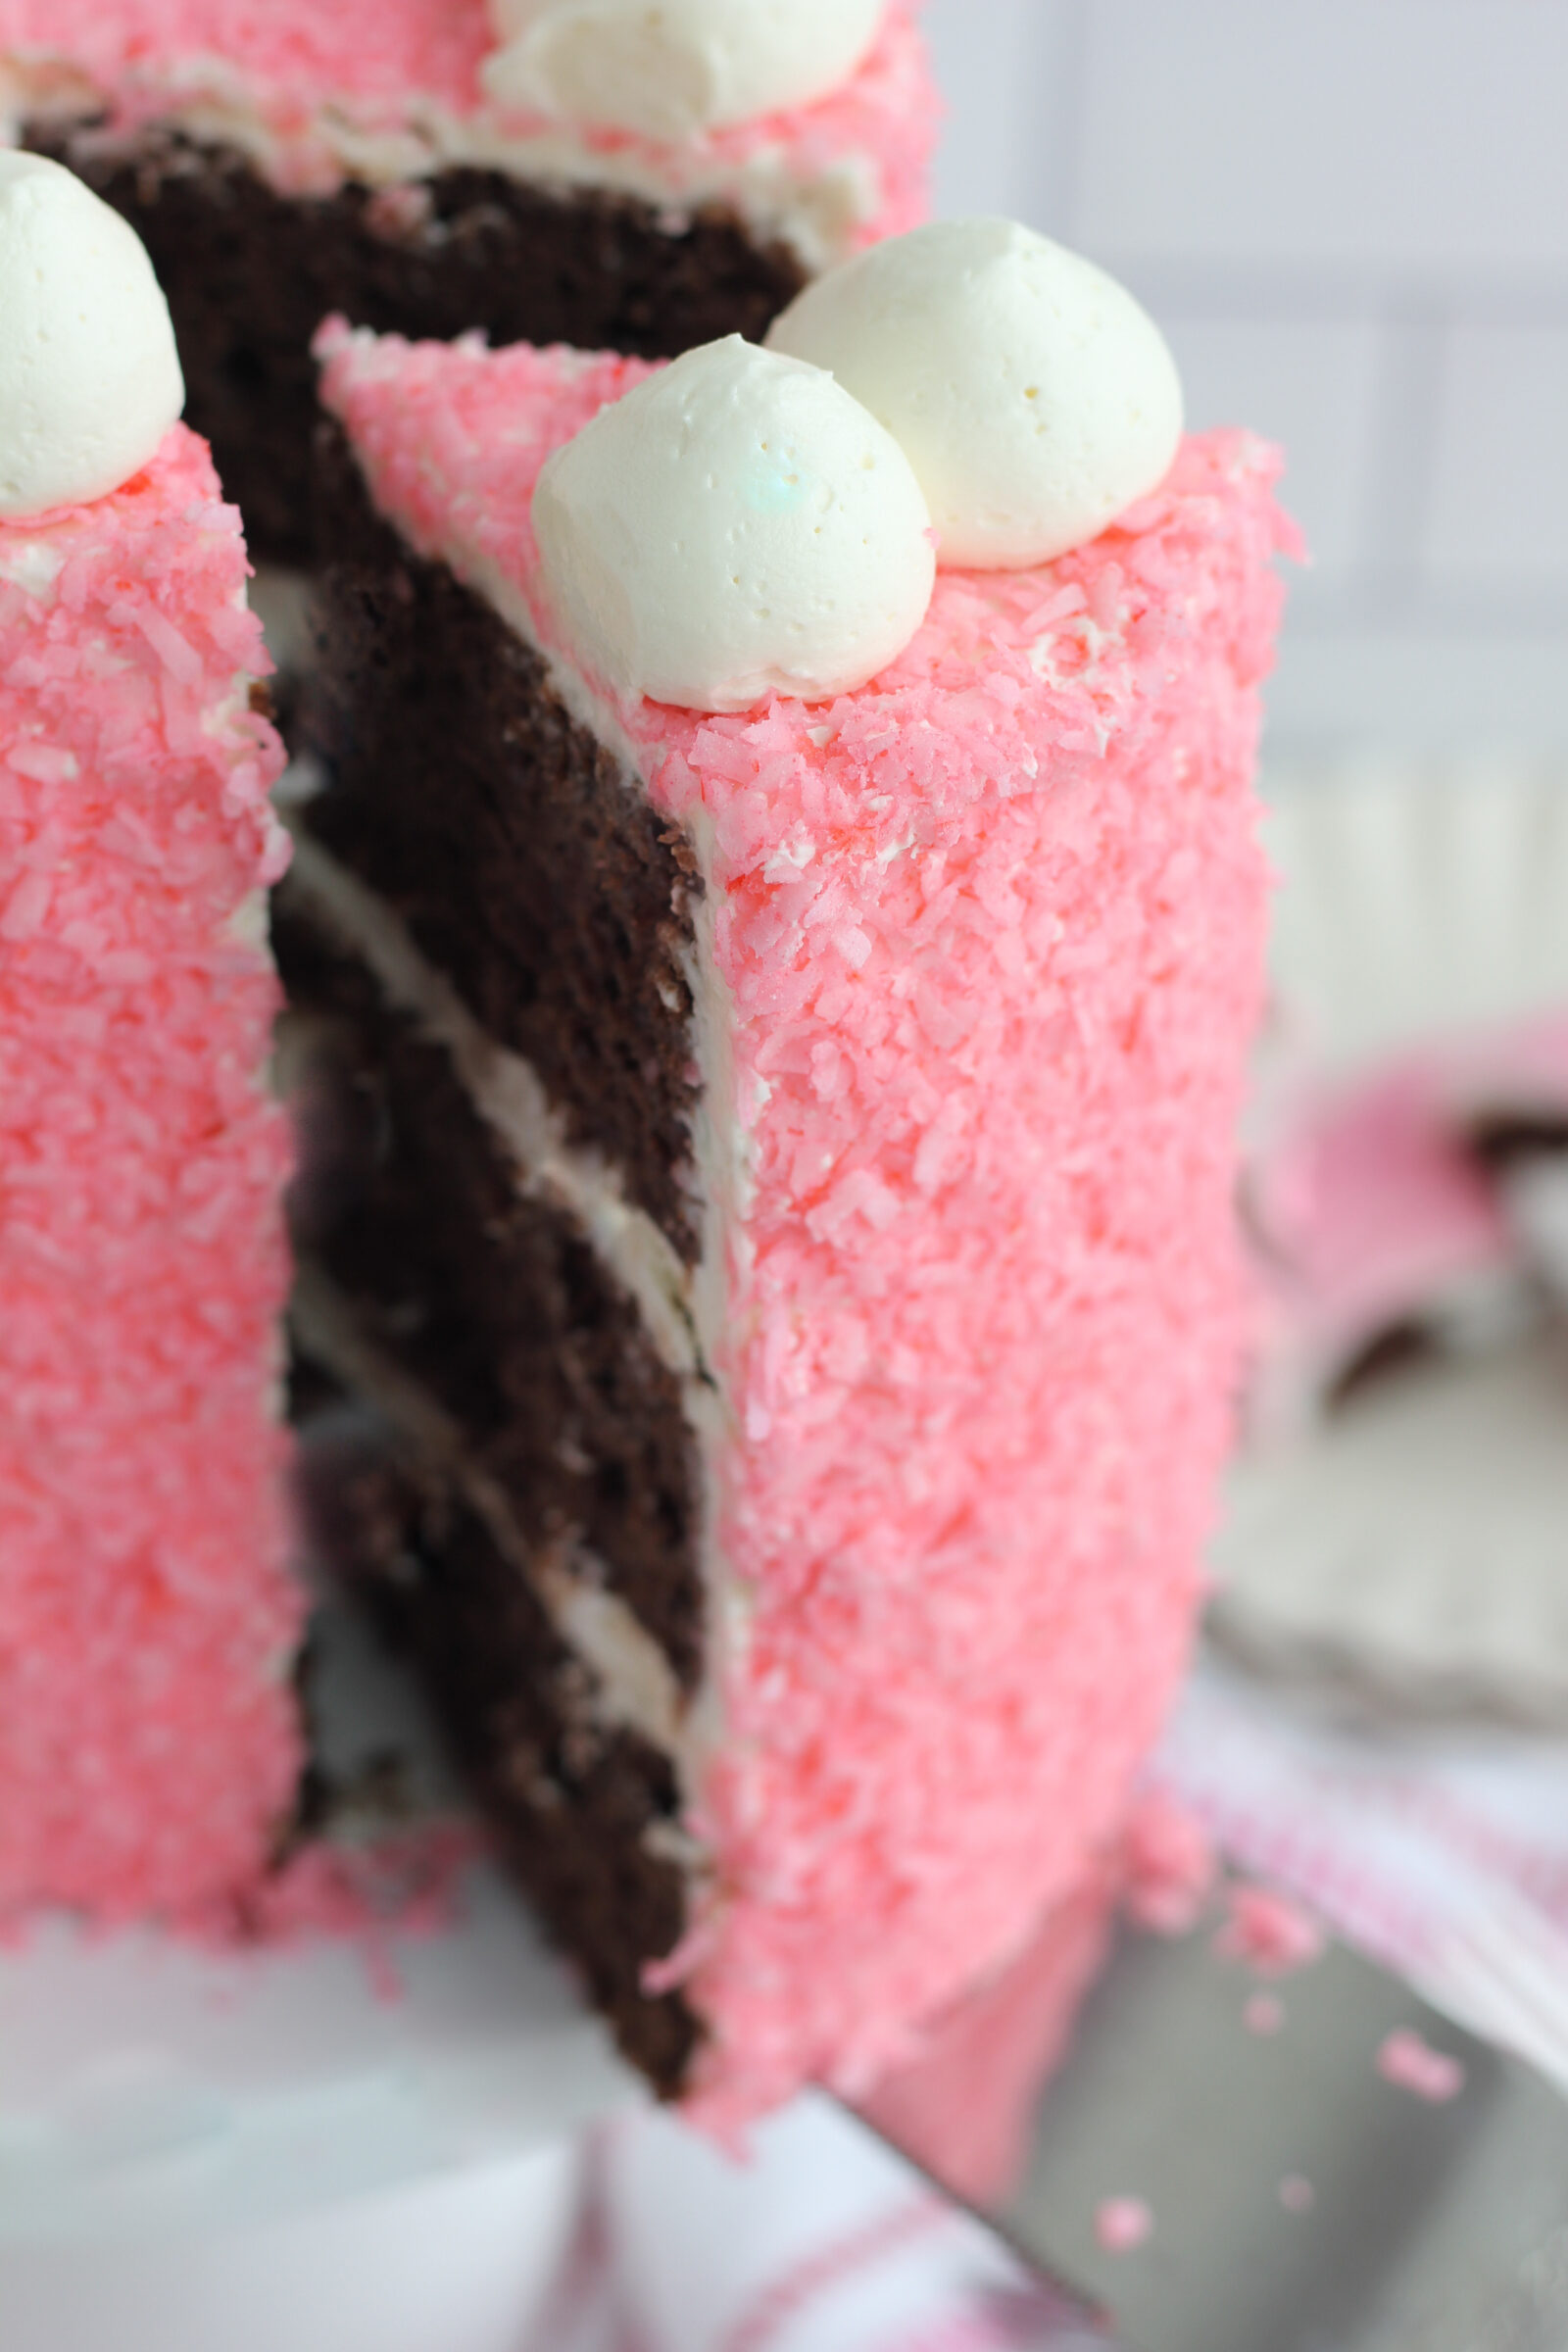 Hostess SnoBalls Coconut Marshmallow Cake Sno Balls Snowball Snacks 6Pack |  eBay